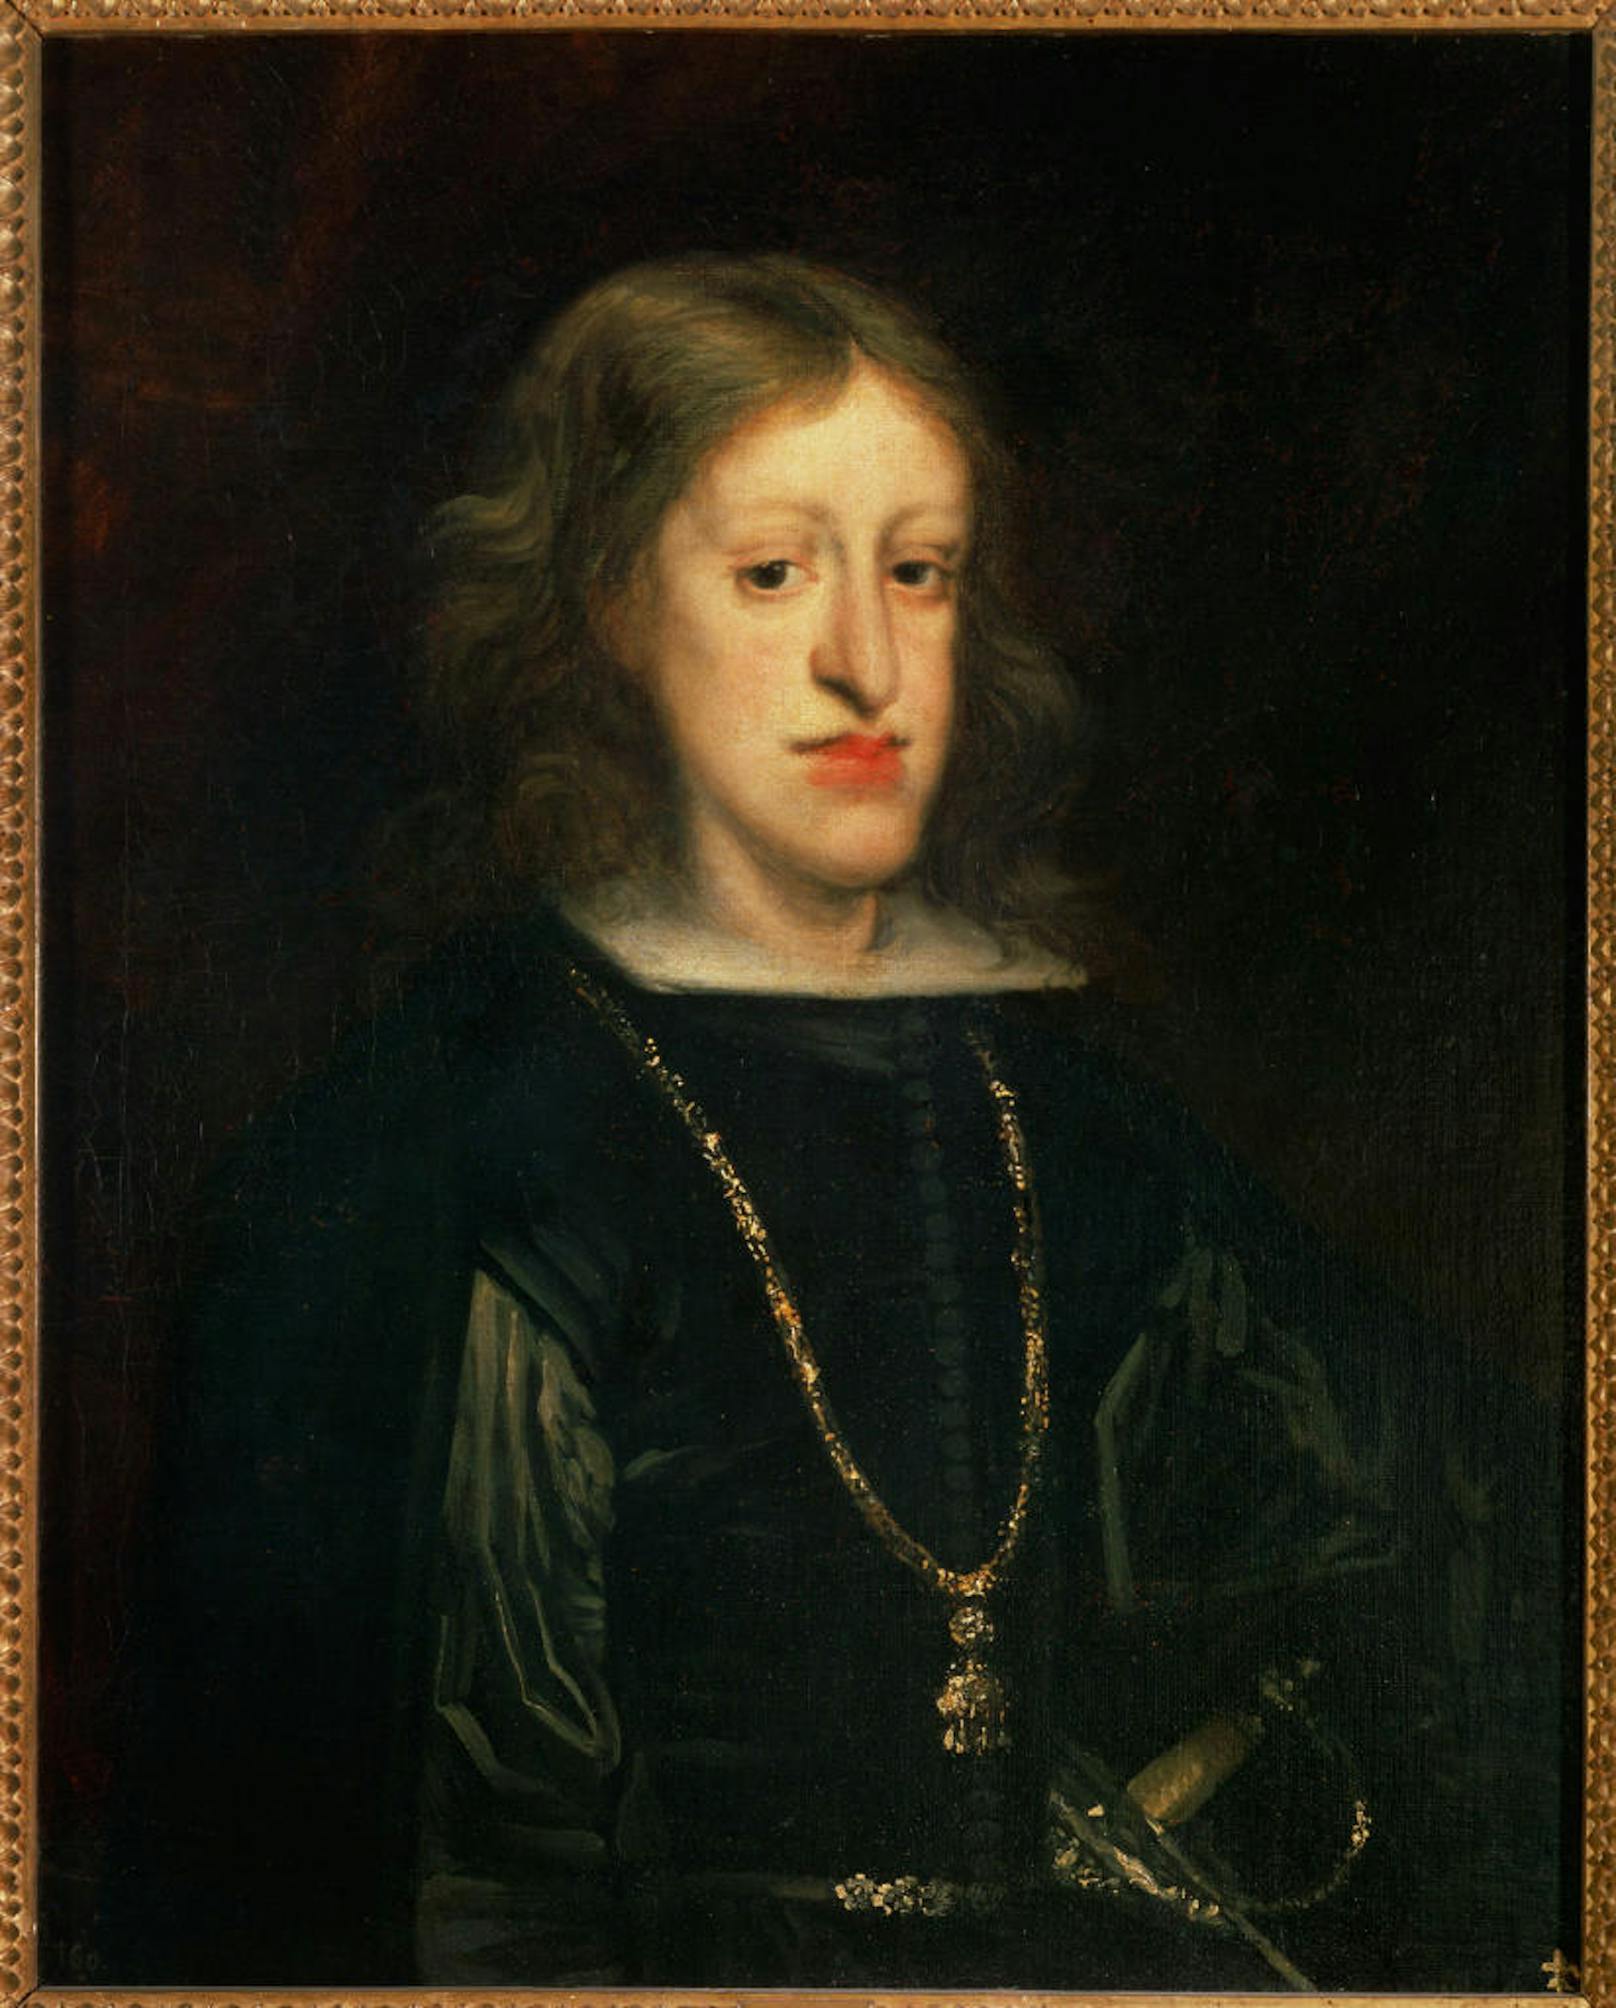 Karl II. von Spanien (1661 - 1700) war der letzte Habsburger auf dem spanischen Thron. Er war der Sohn von Philipp IV. und Maria Anna von Österreich, auch sie waren beide Habsburger. Durch die Inzucht war er nicht nur körperlich missgebildet sondern auch geistig unterentwickelt. Sein Tod löste den Spanischen Erbfolgekrieg aus.